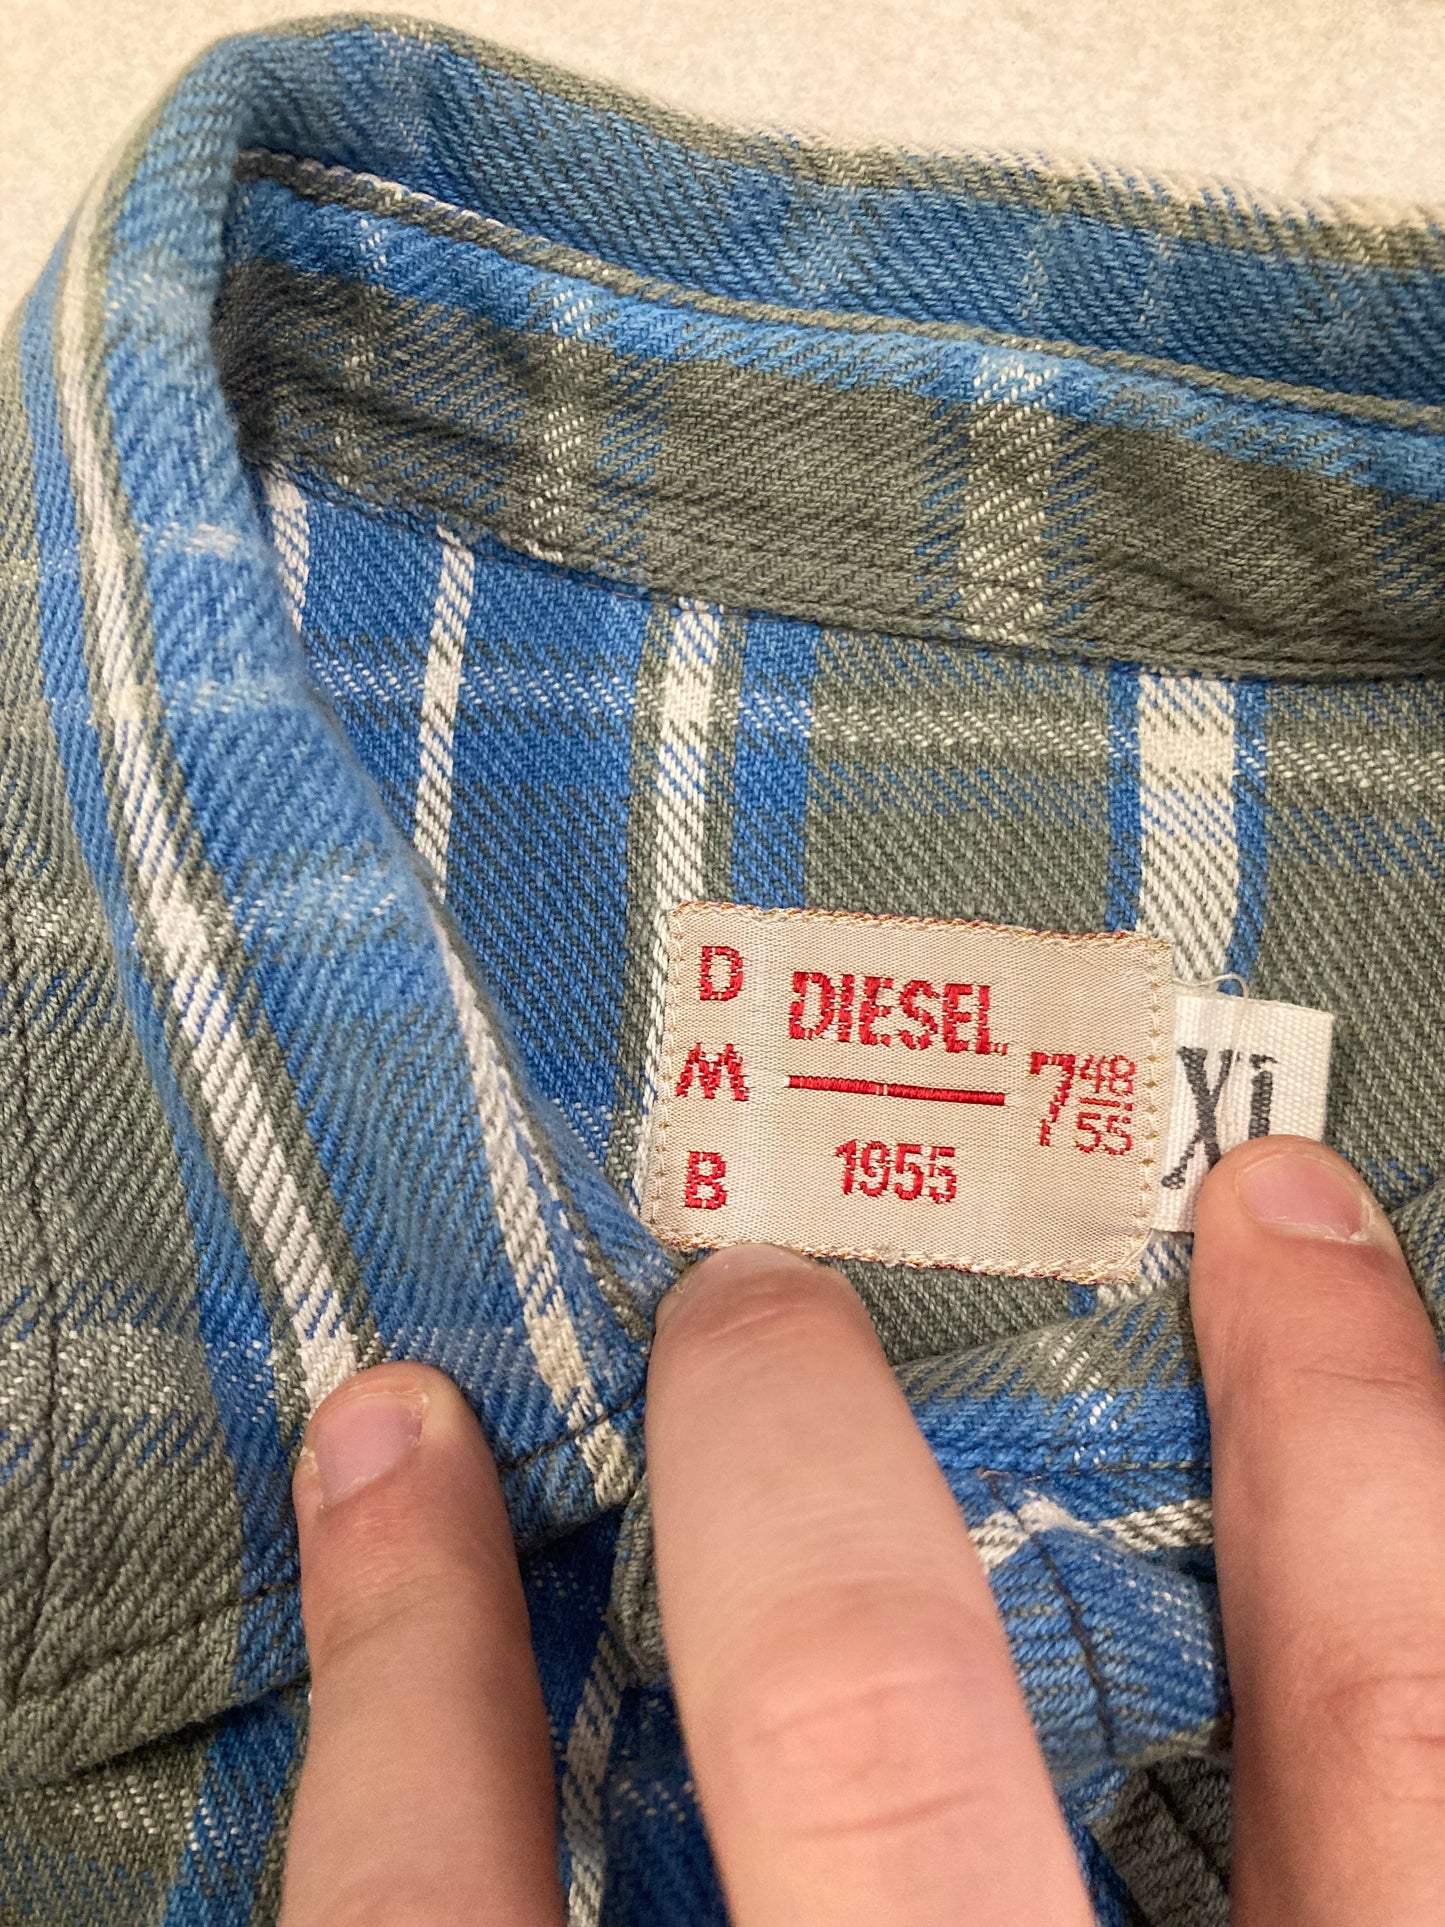 Camisa Diesel 90s Vintage - XL